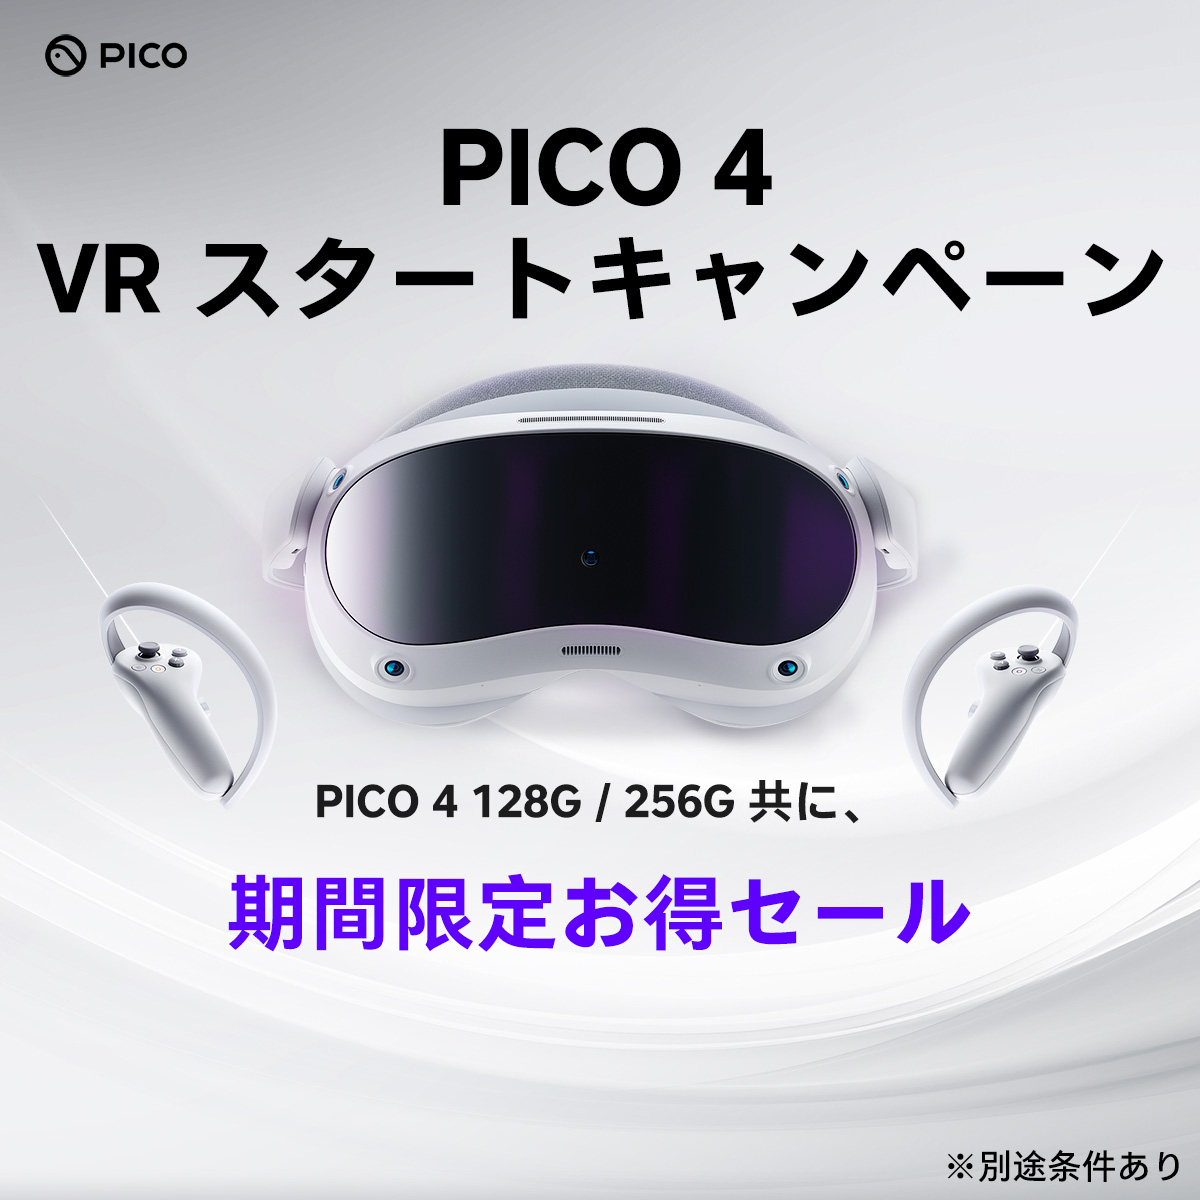 VRヘッドセット「PICO 4」を8000円分お得に買えるキャンペーンが開始_001